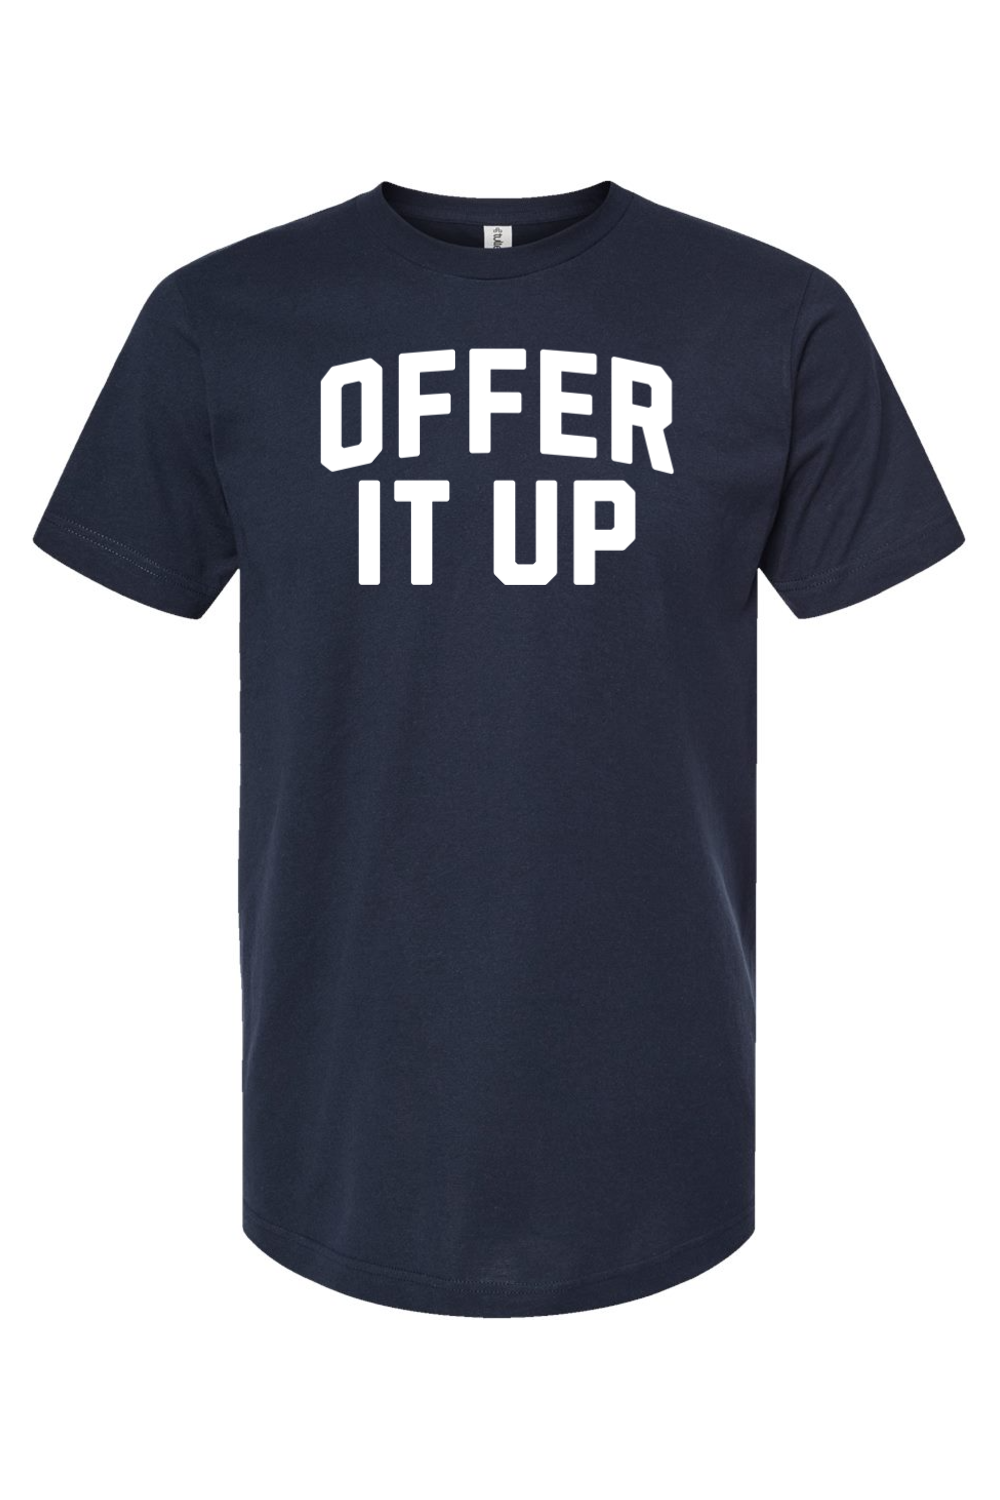 Offer It Up - T-Shirt